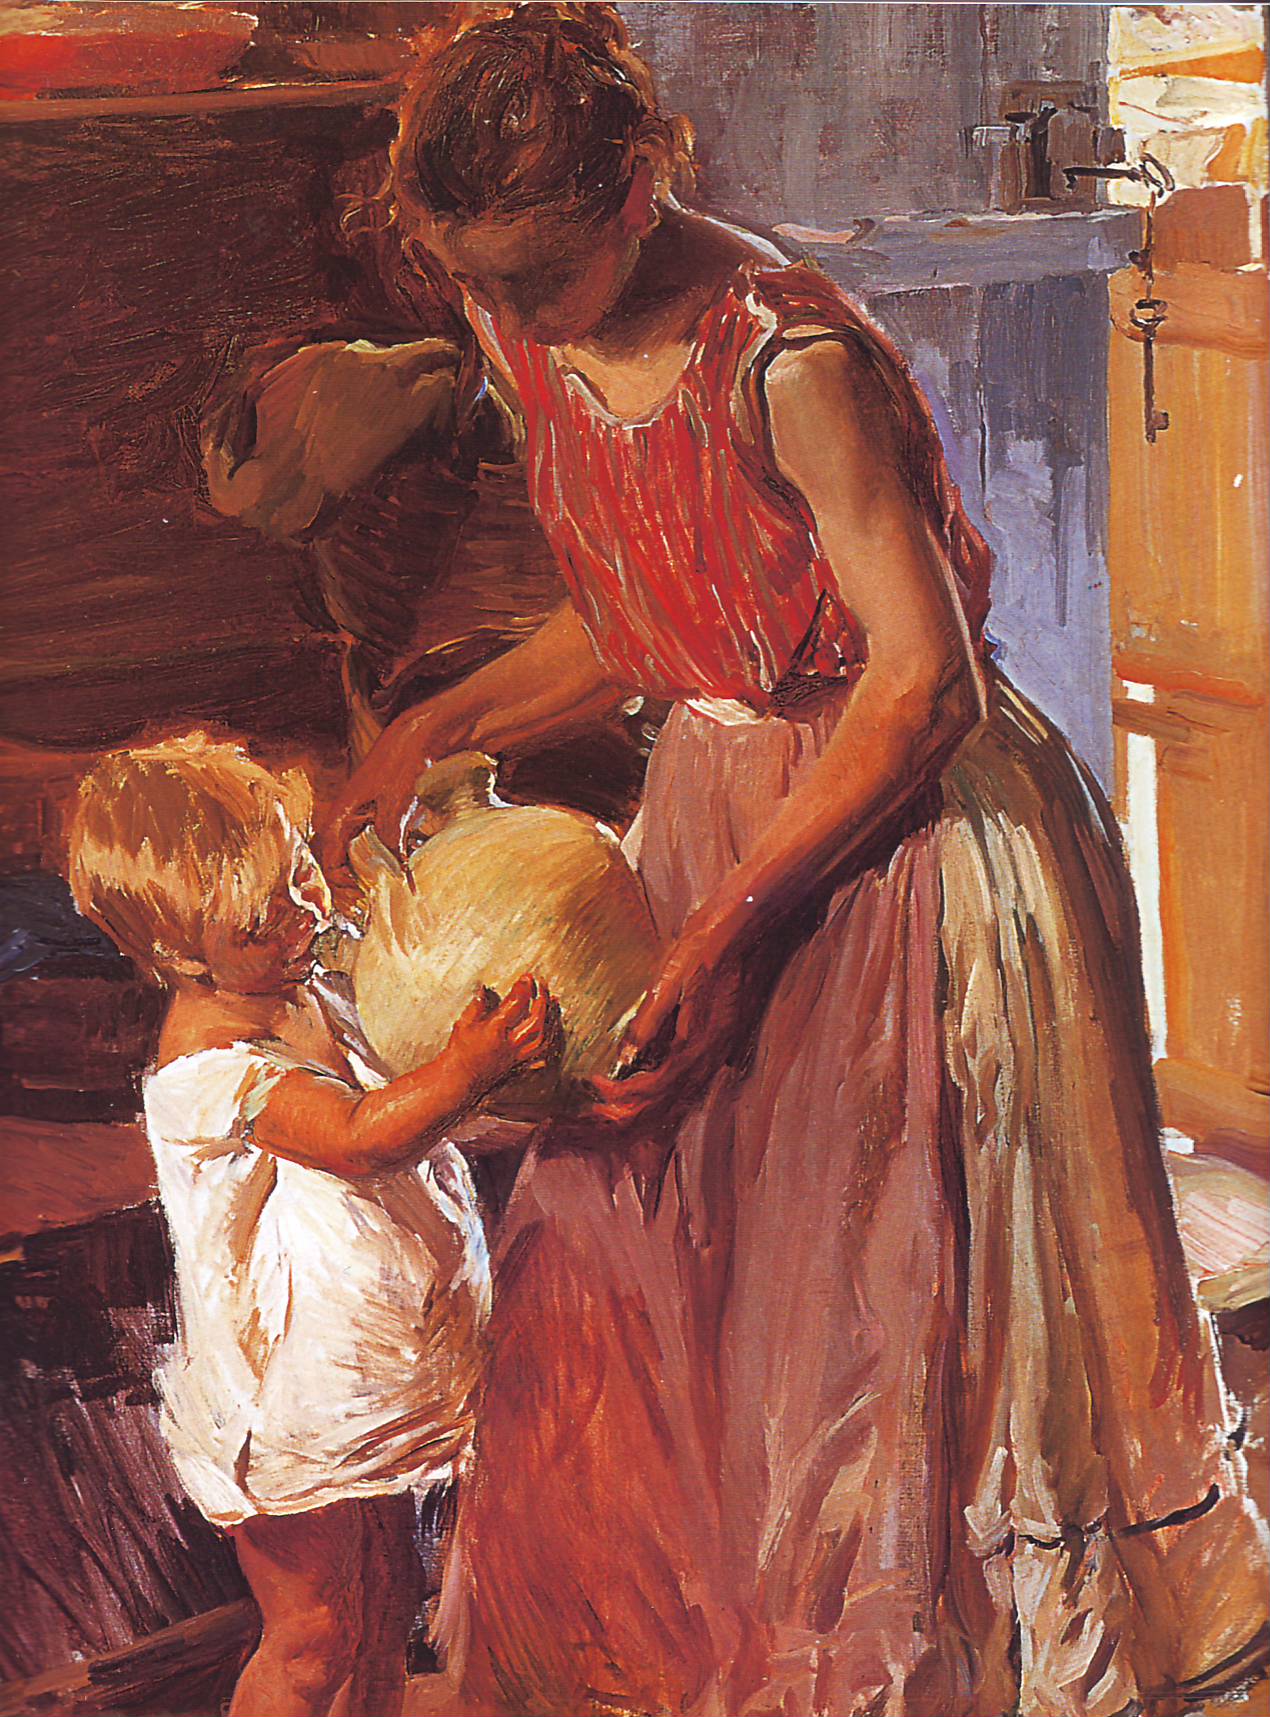 Madre y niño con un botijo. Joaquín Sorolla. Óleo sobre lienzo, 1905